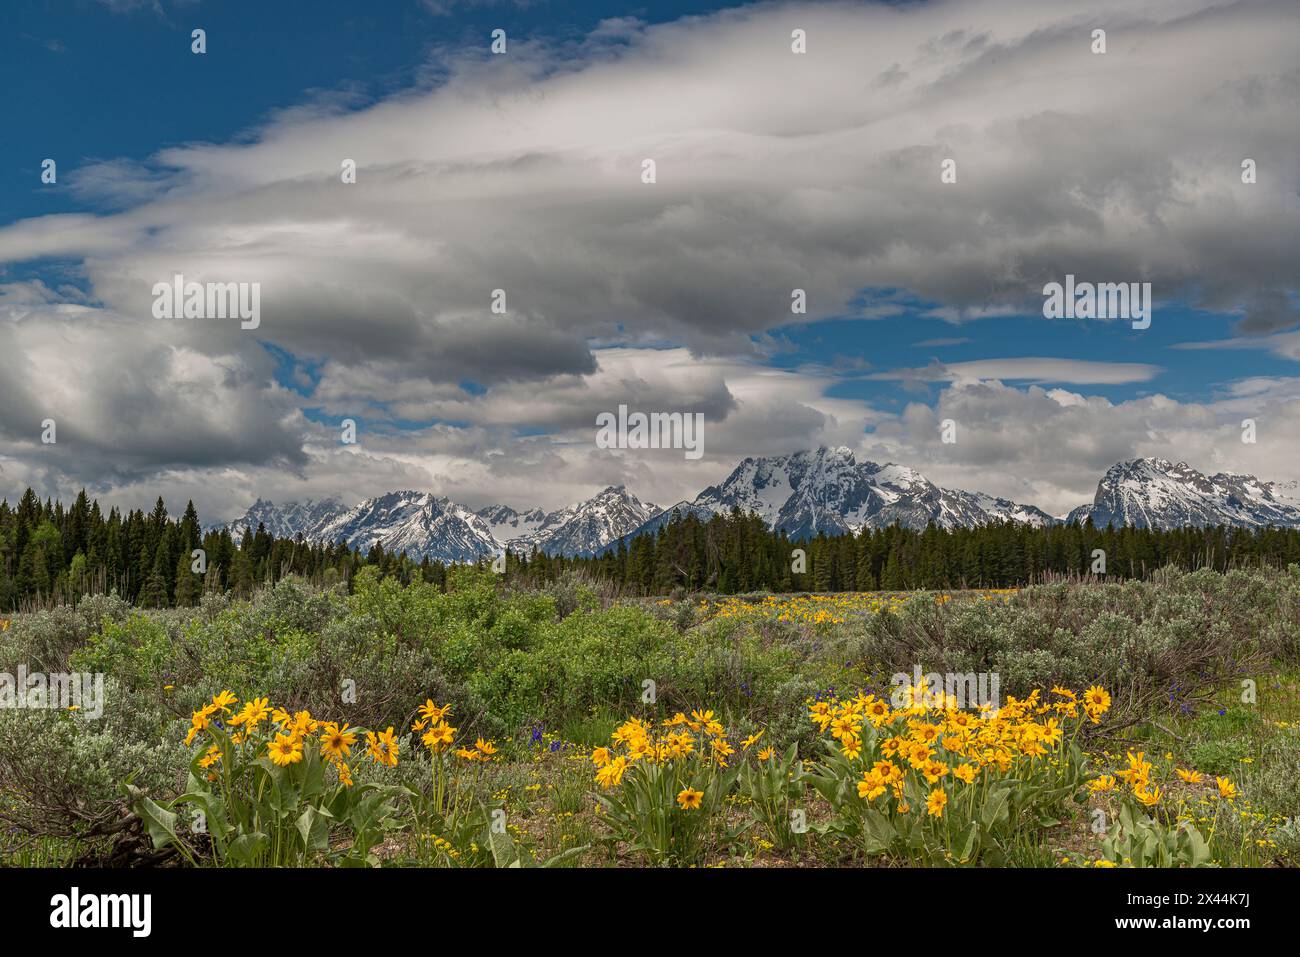 USA, Wyoming. Paysage des fleurs sauvages balsamroot d'Arrowleaf et des monts Teton, parc national de Grand Teton Banque D'Images